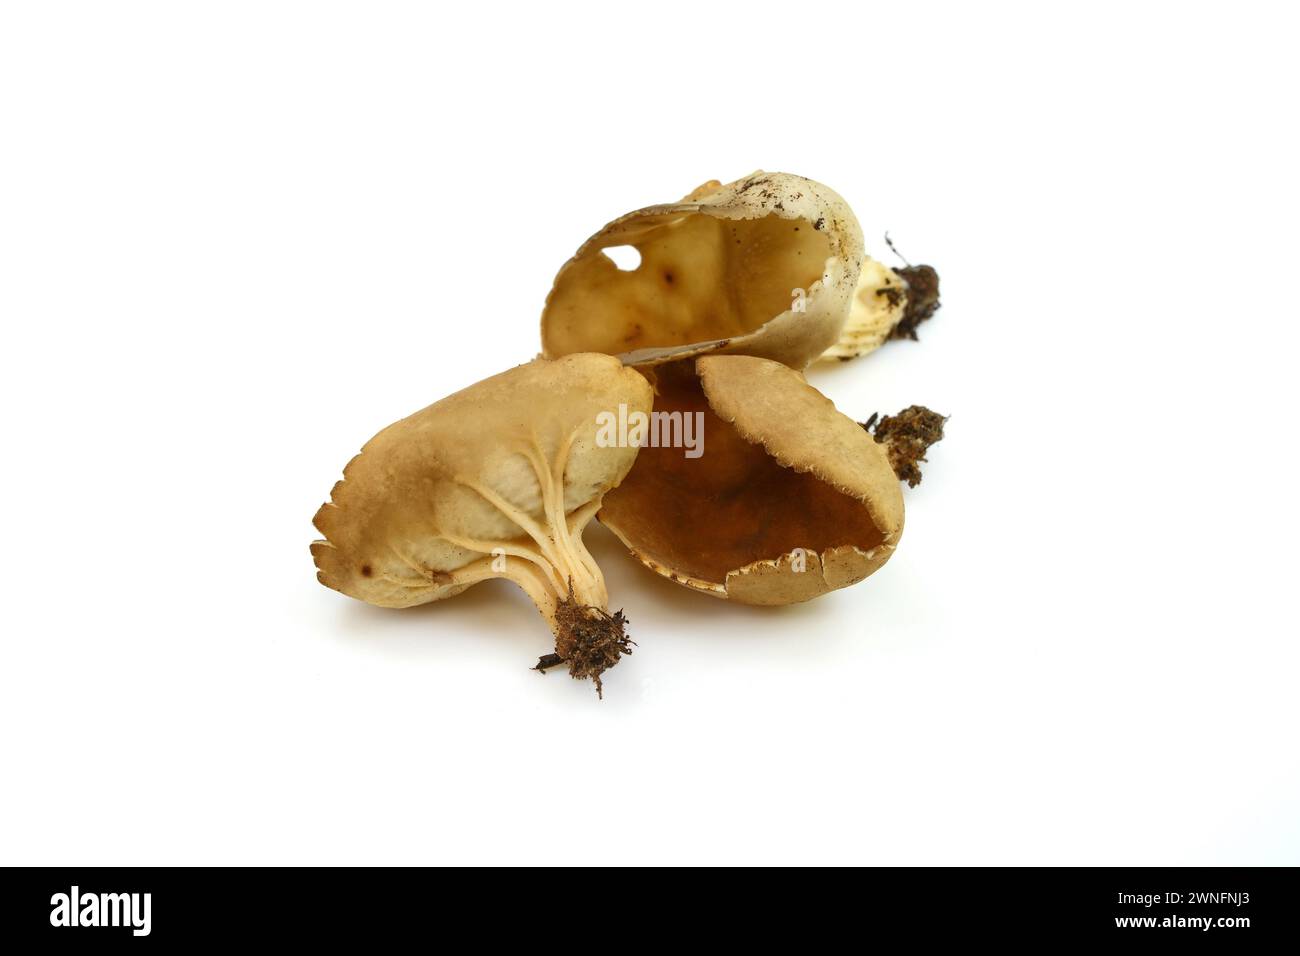 peziza sp. mushroom isolated on white Stock Photo